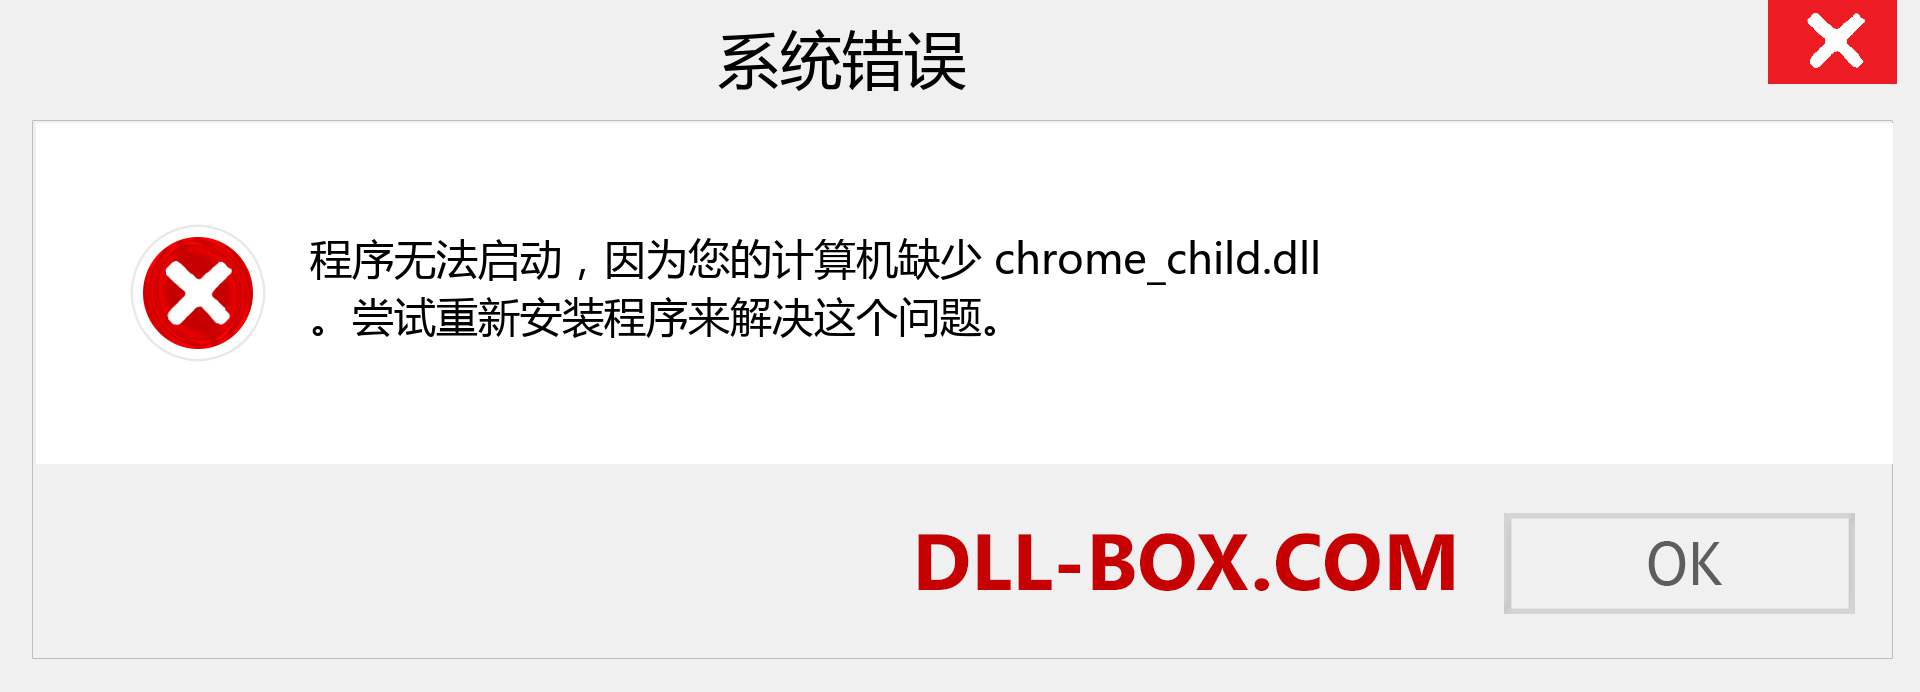 chrome_child.dll 文件丢失？。 适用于 Windows 7、8、10 的下载 - 修复 Windows、照片、图像上的 chrome_child dll 丢失错误